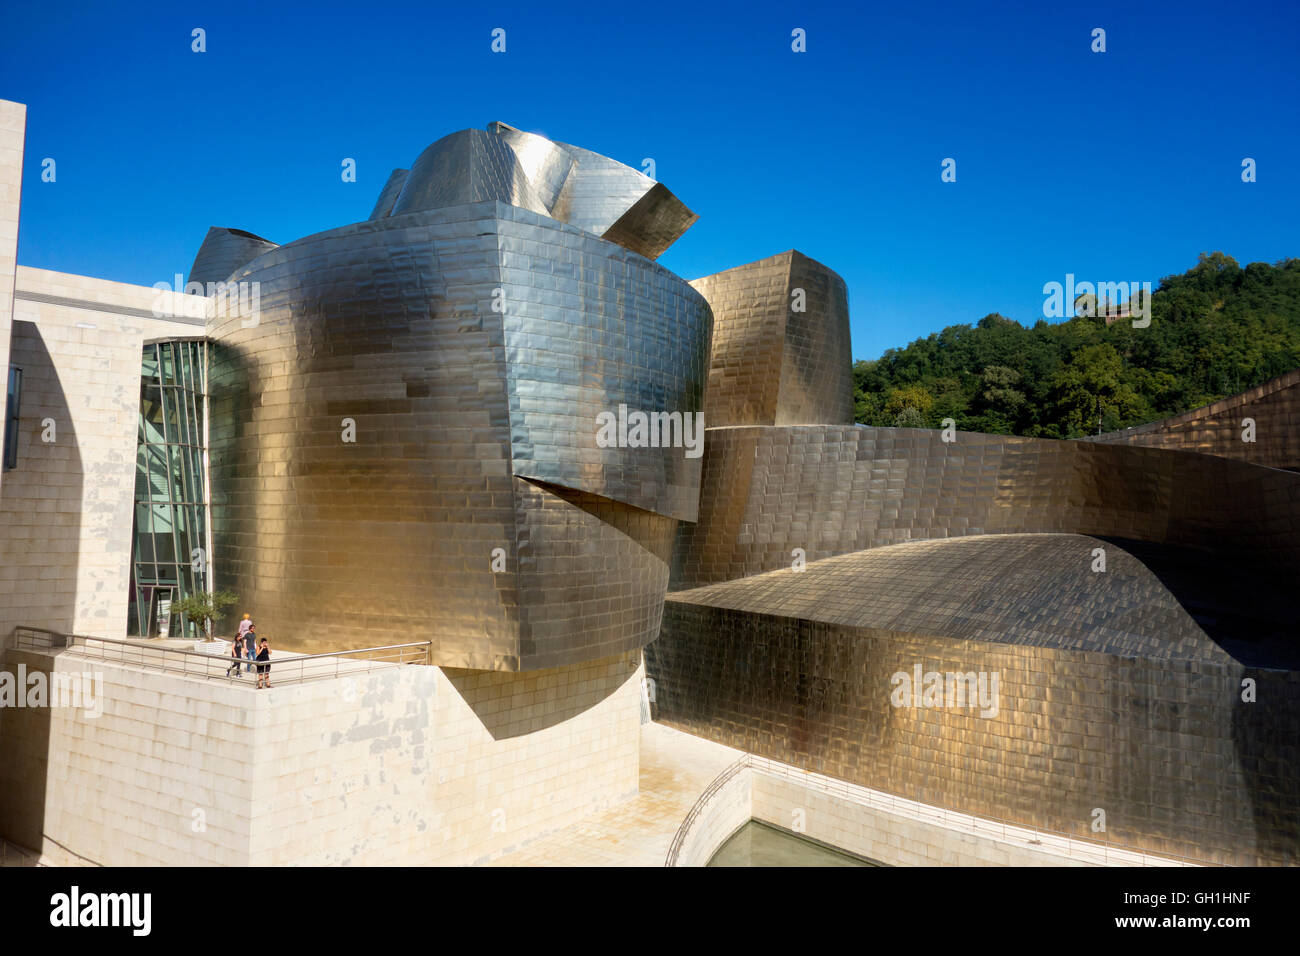 The iconic Guggenheim Museum in Bilbao, Spain 14 Stock Photo